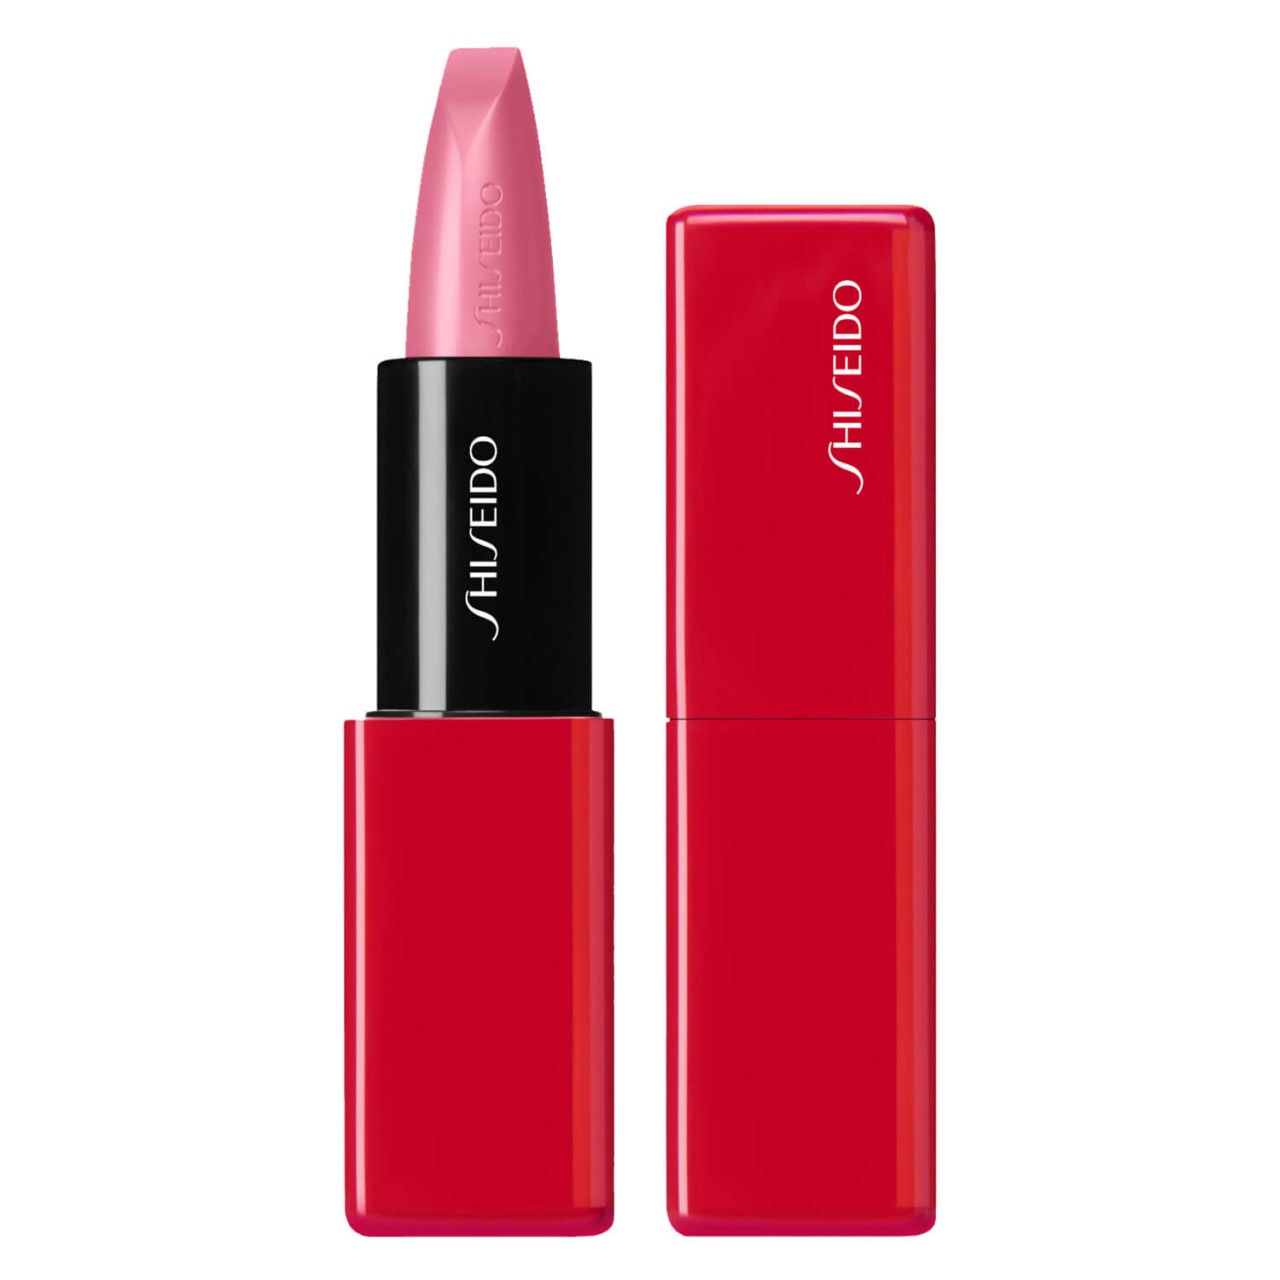 TechnoSatin Gel Lipstick - Pulsar Pink 407 von Shiseido